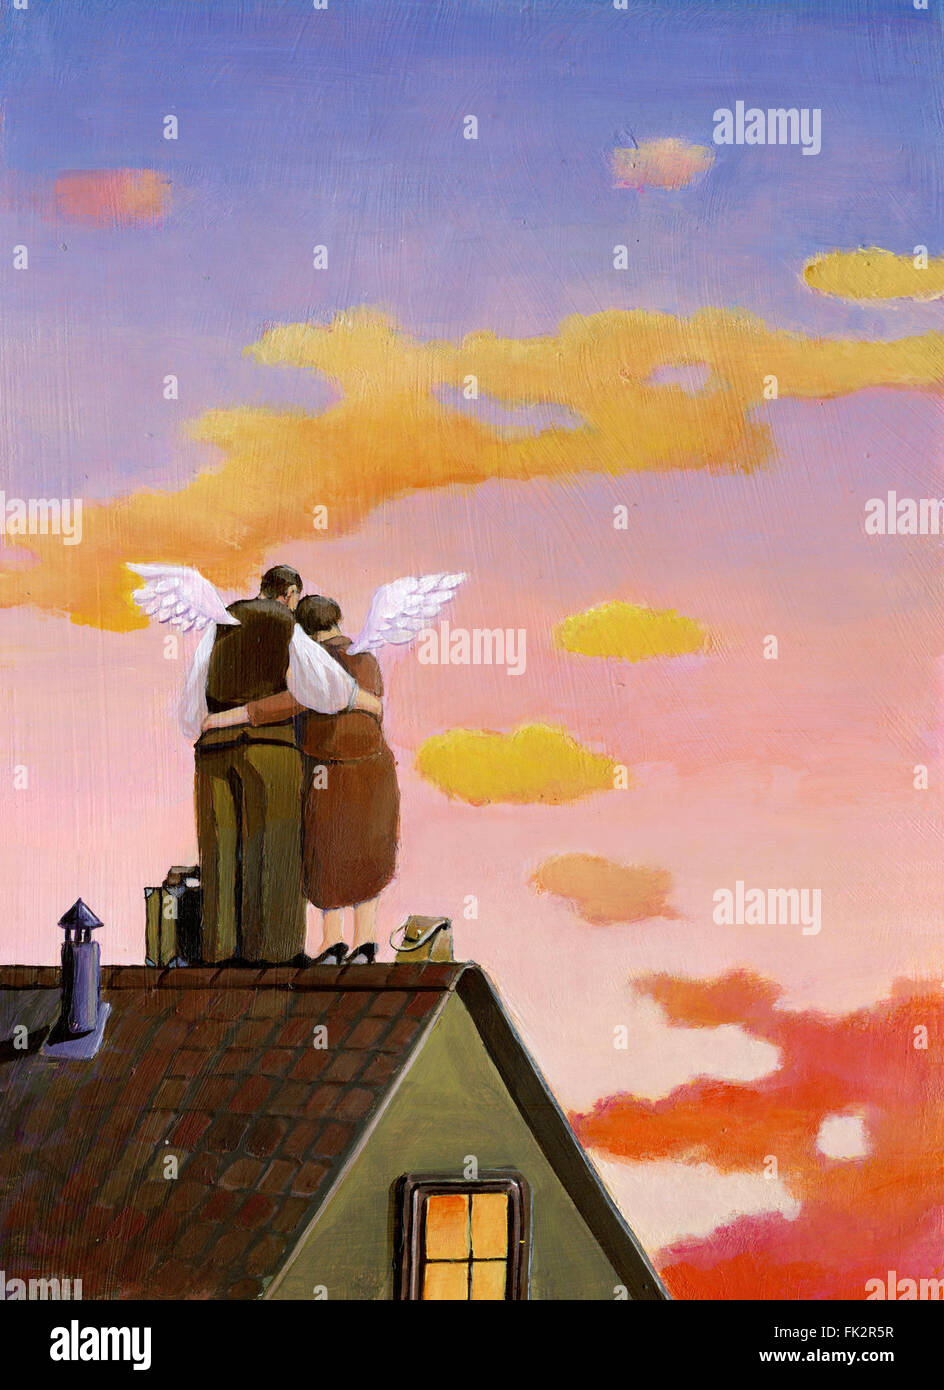 Sonnenuntergang Flügel union Liebe Ehe verlassen Dach romantischen Abend Atmosphäre süße Illustration Kunst Hintergrund Konzept surreale fa Stockfoto